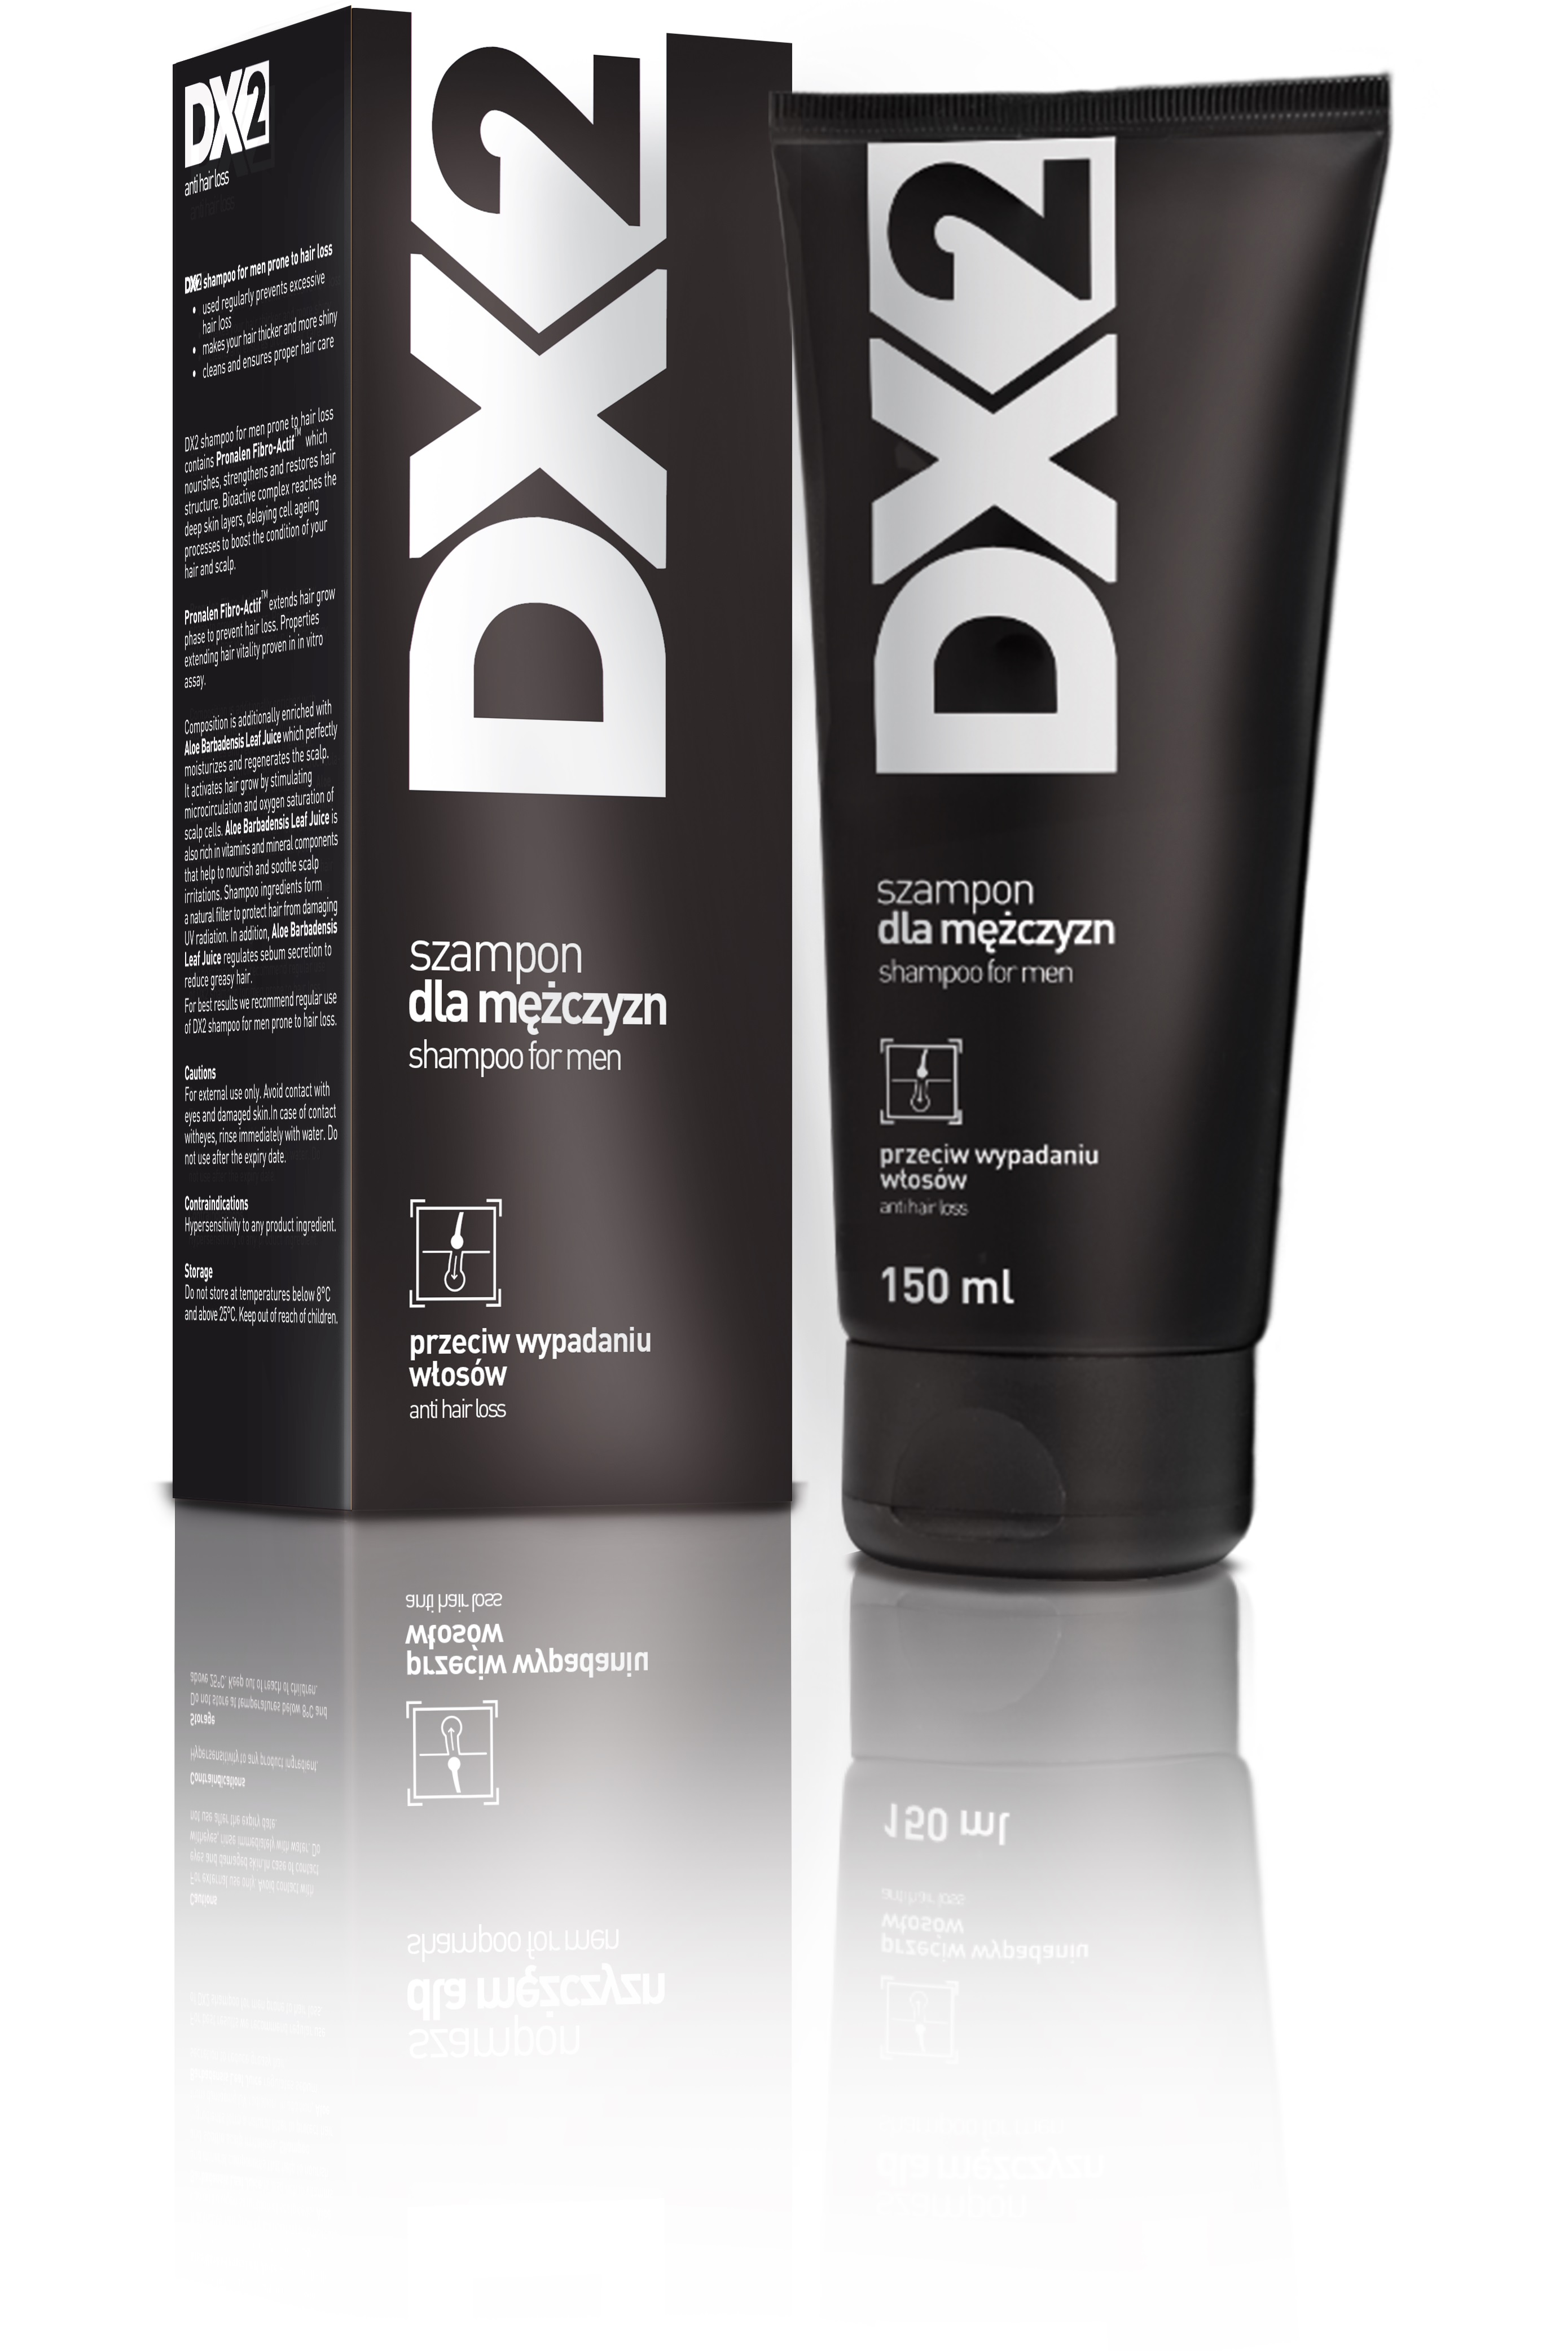 szampon dx2 przewic wypadaniu